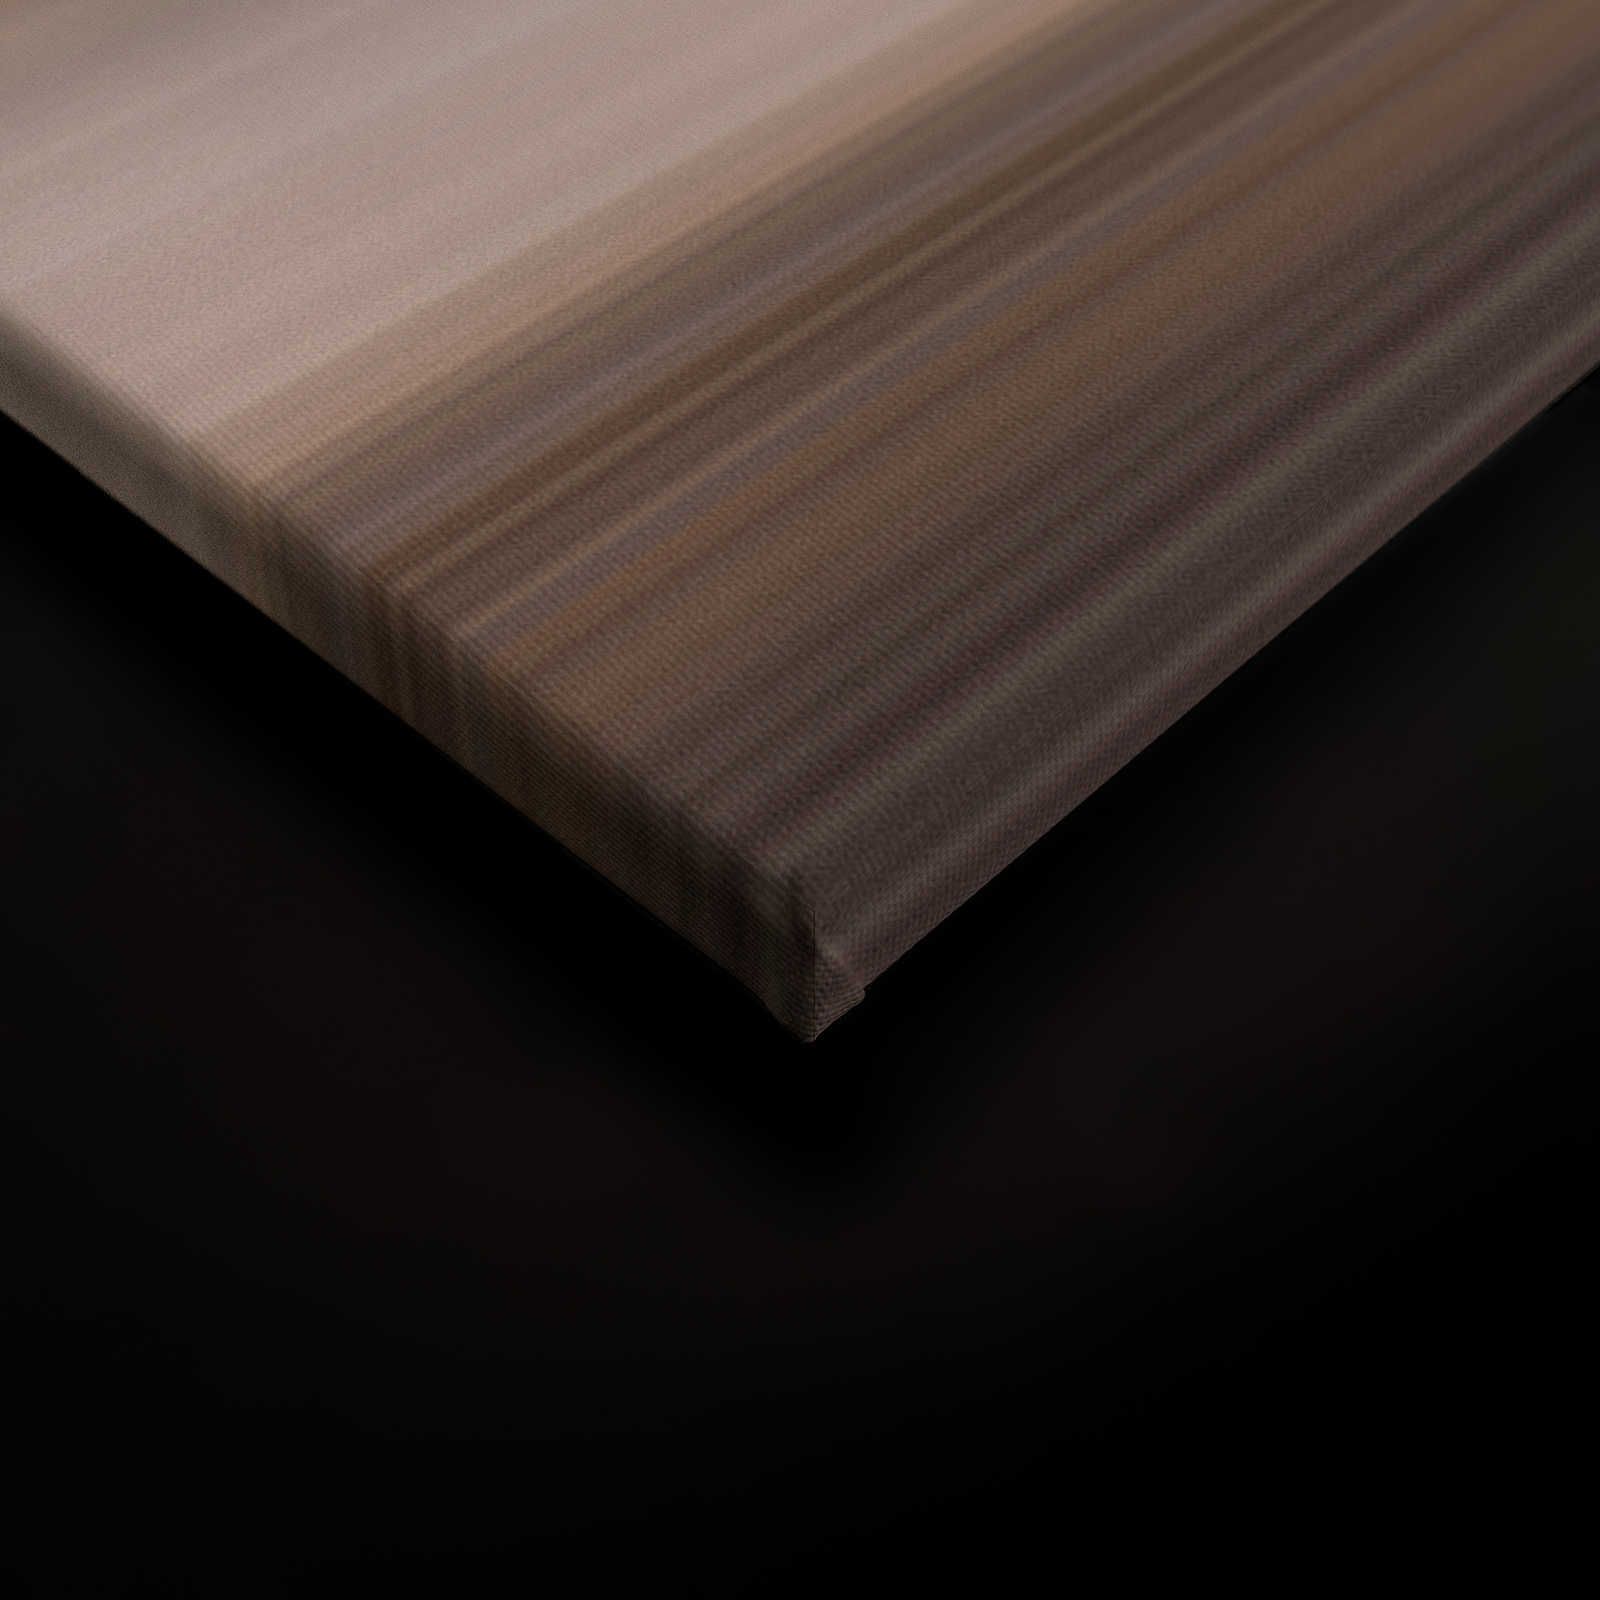             Horizon 2 - Quadro su tela con paesaggio astratto e linee - 1,20 m x 0,80 m
        